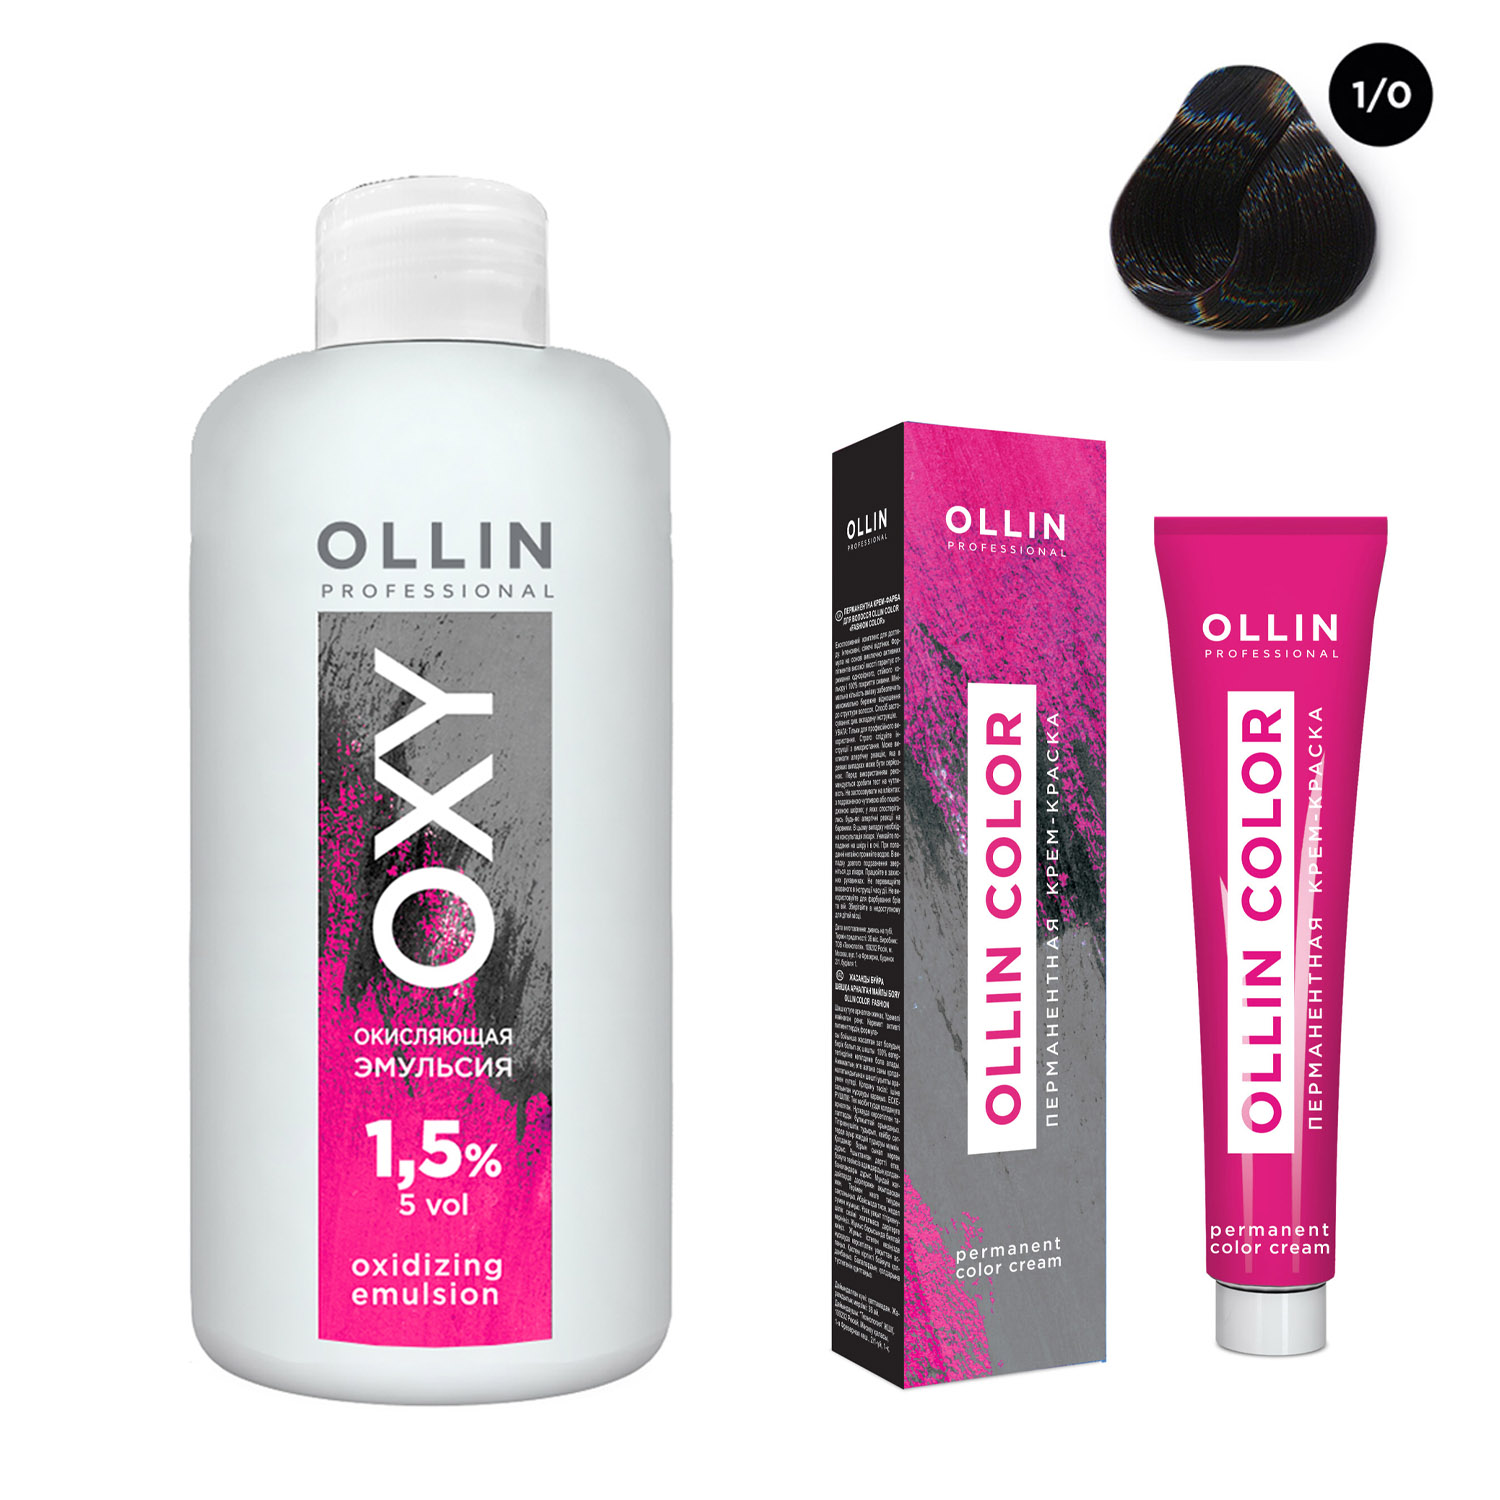 Ollin Professional Набор Перманентная крем-краска для волос Ollin Color оттенок 1/0 иссиня-черный 100 мл + Окисляющая эмульсия Oxy 1,5% 150 мл (Ollin Professional, Ollin Color)